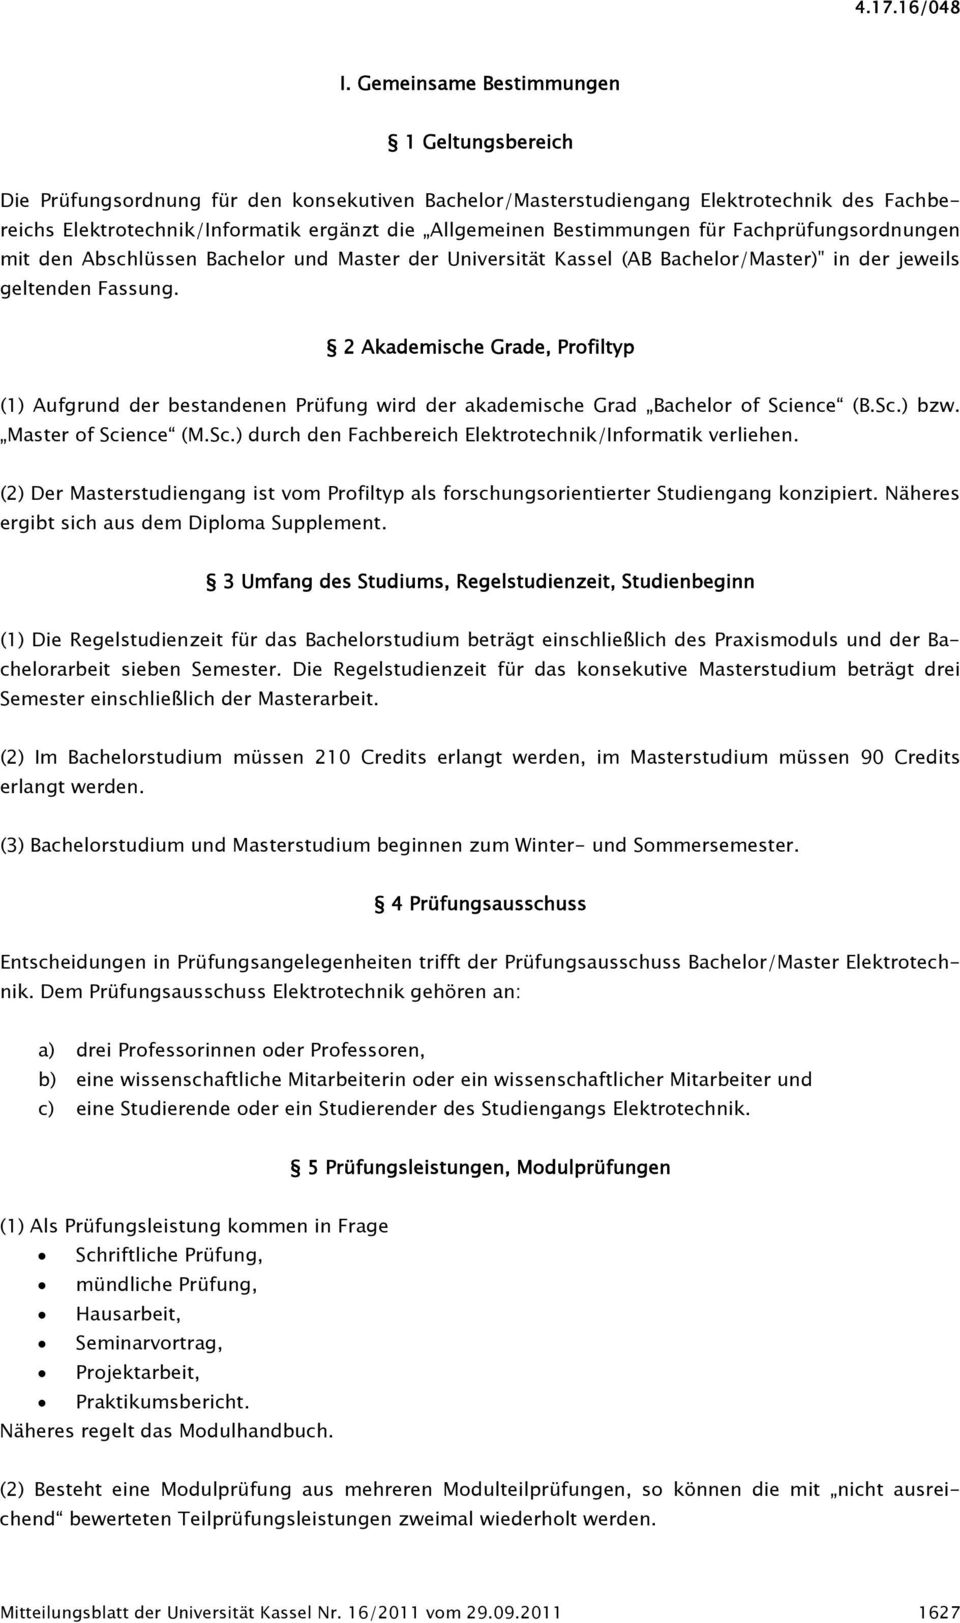 Bestimmungen für Fachprüfungsordnungen mit den Abschlüssen Bachelor und Master der Universität Kassel (AB Bachelor/Master)" in der jeweils geltenden Fassung.